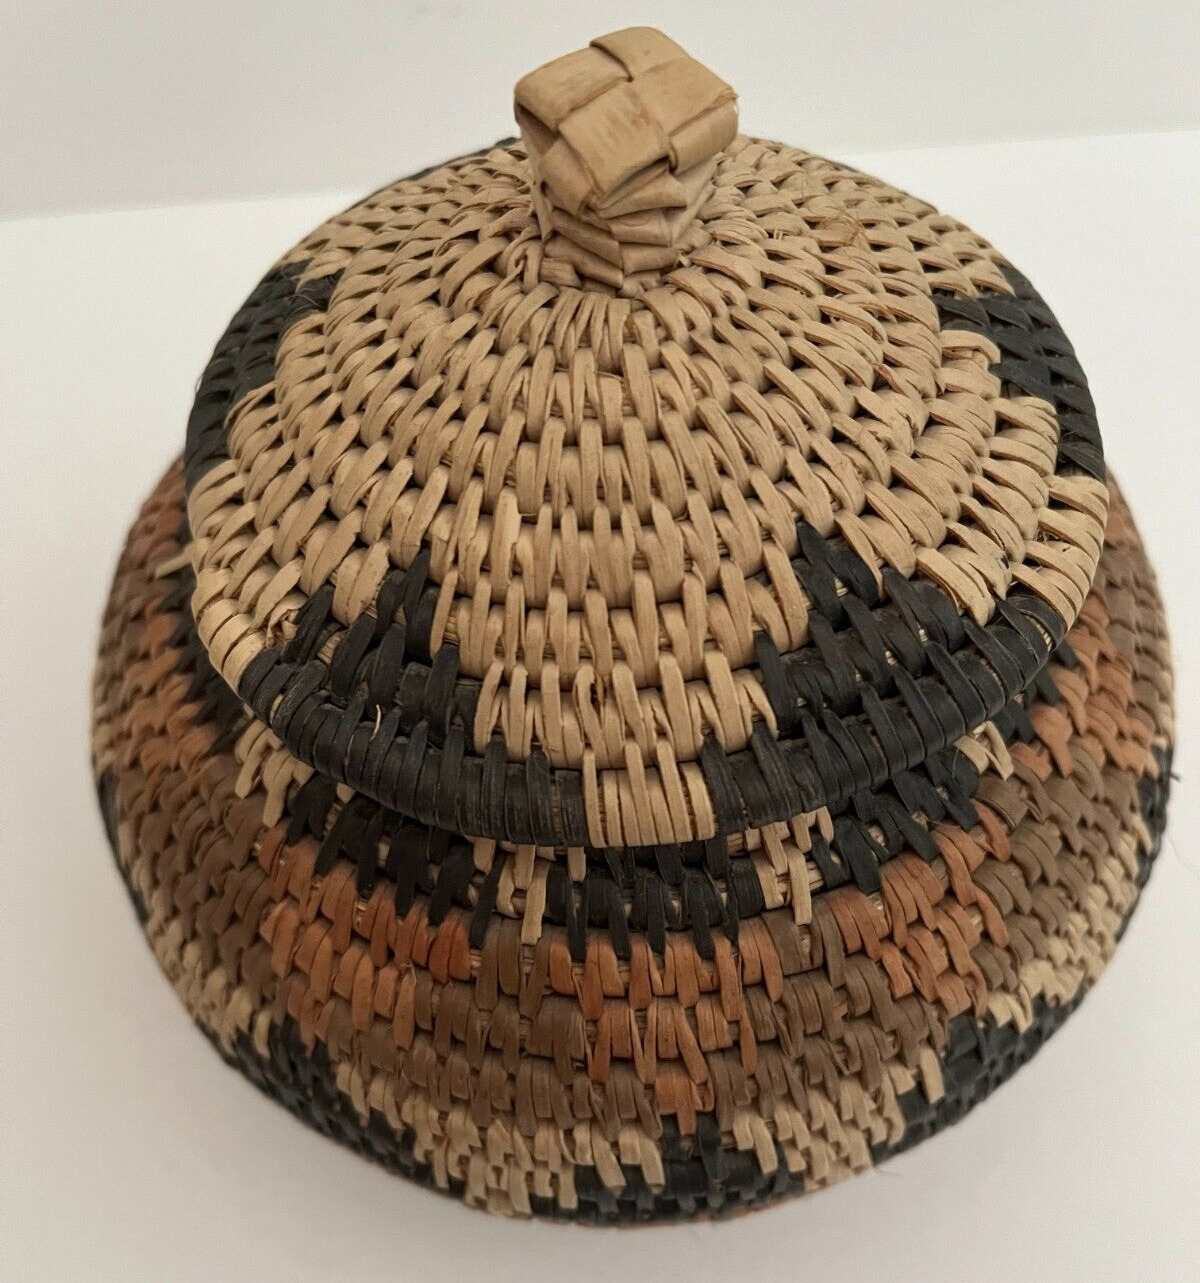 Zulu Beer Basket Bulb Shaped Artist Ms. Sipiwe Hlabisa South African Handmade